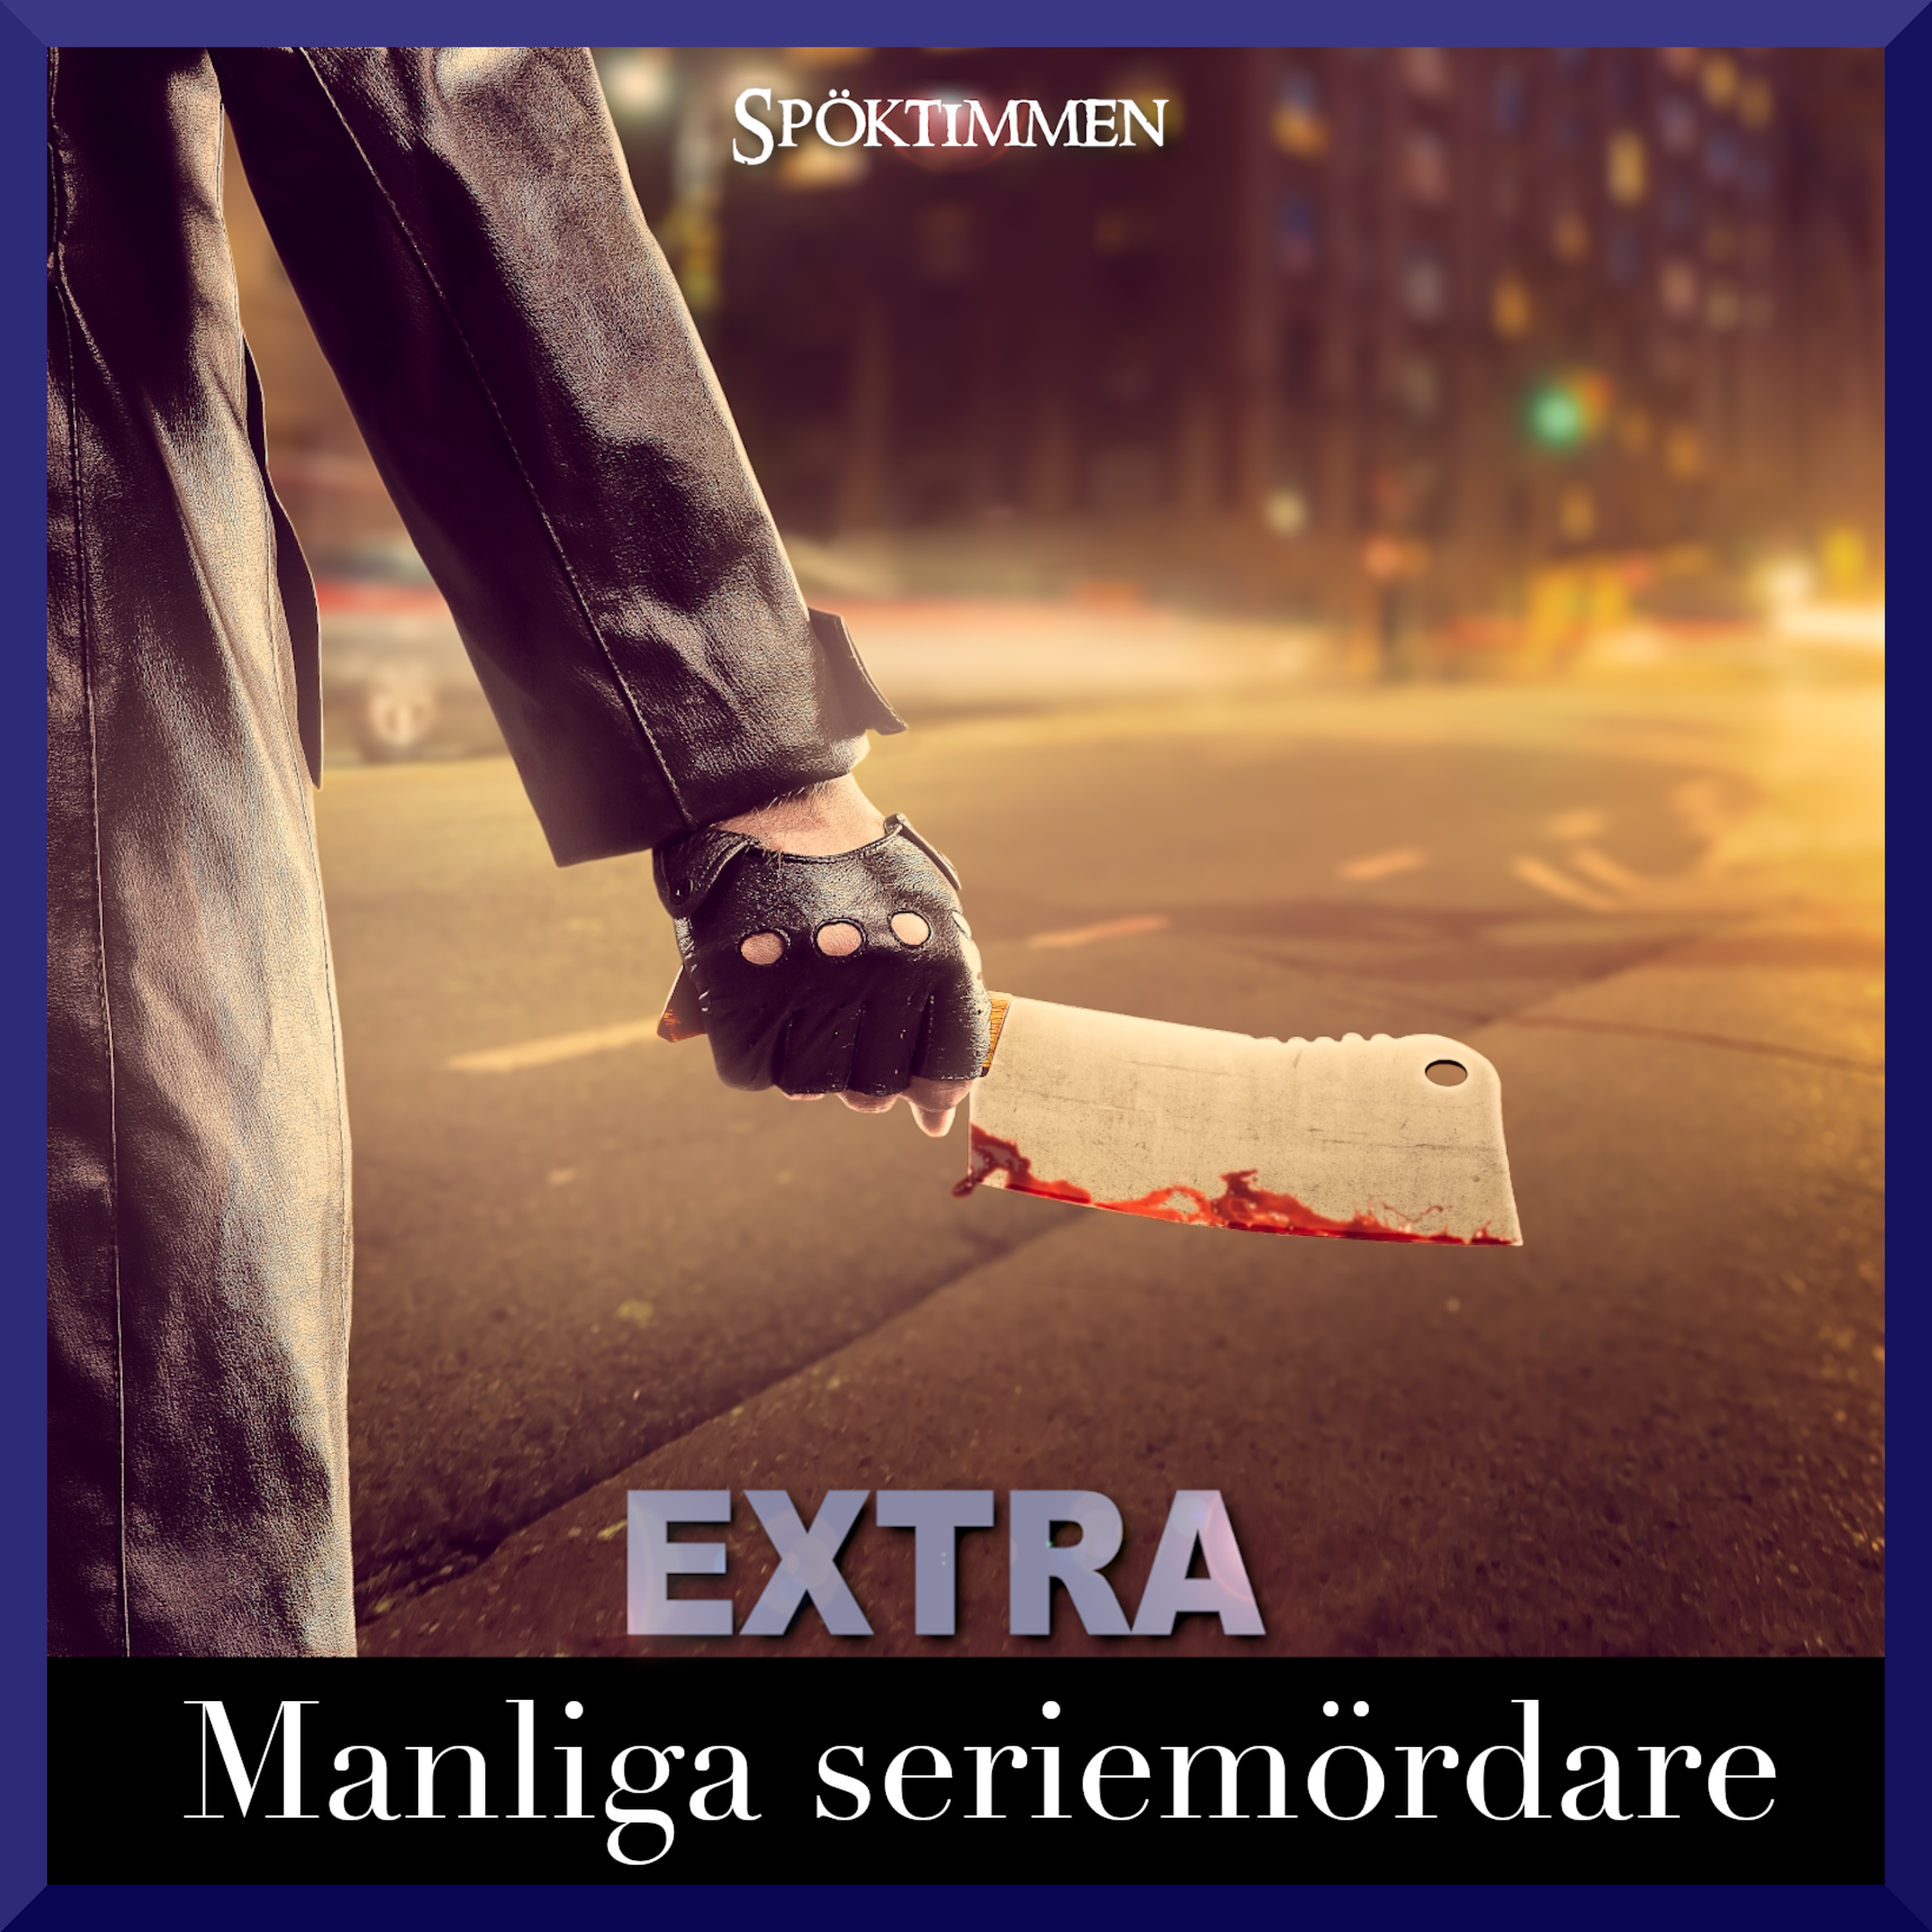 EXTRA: Manliga seriemördare